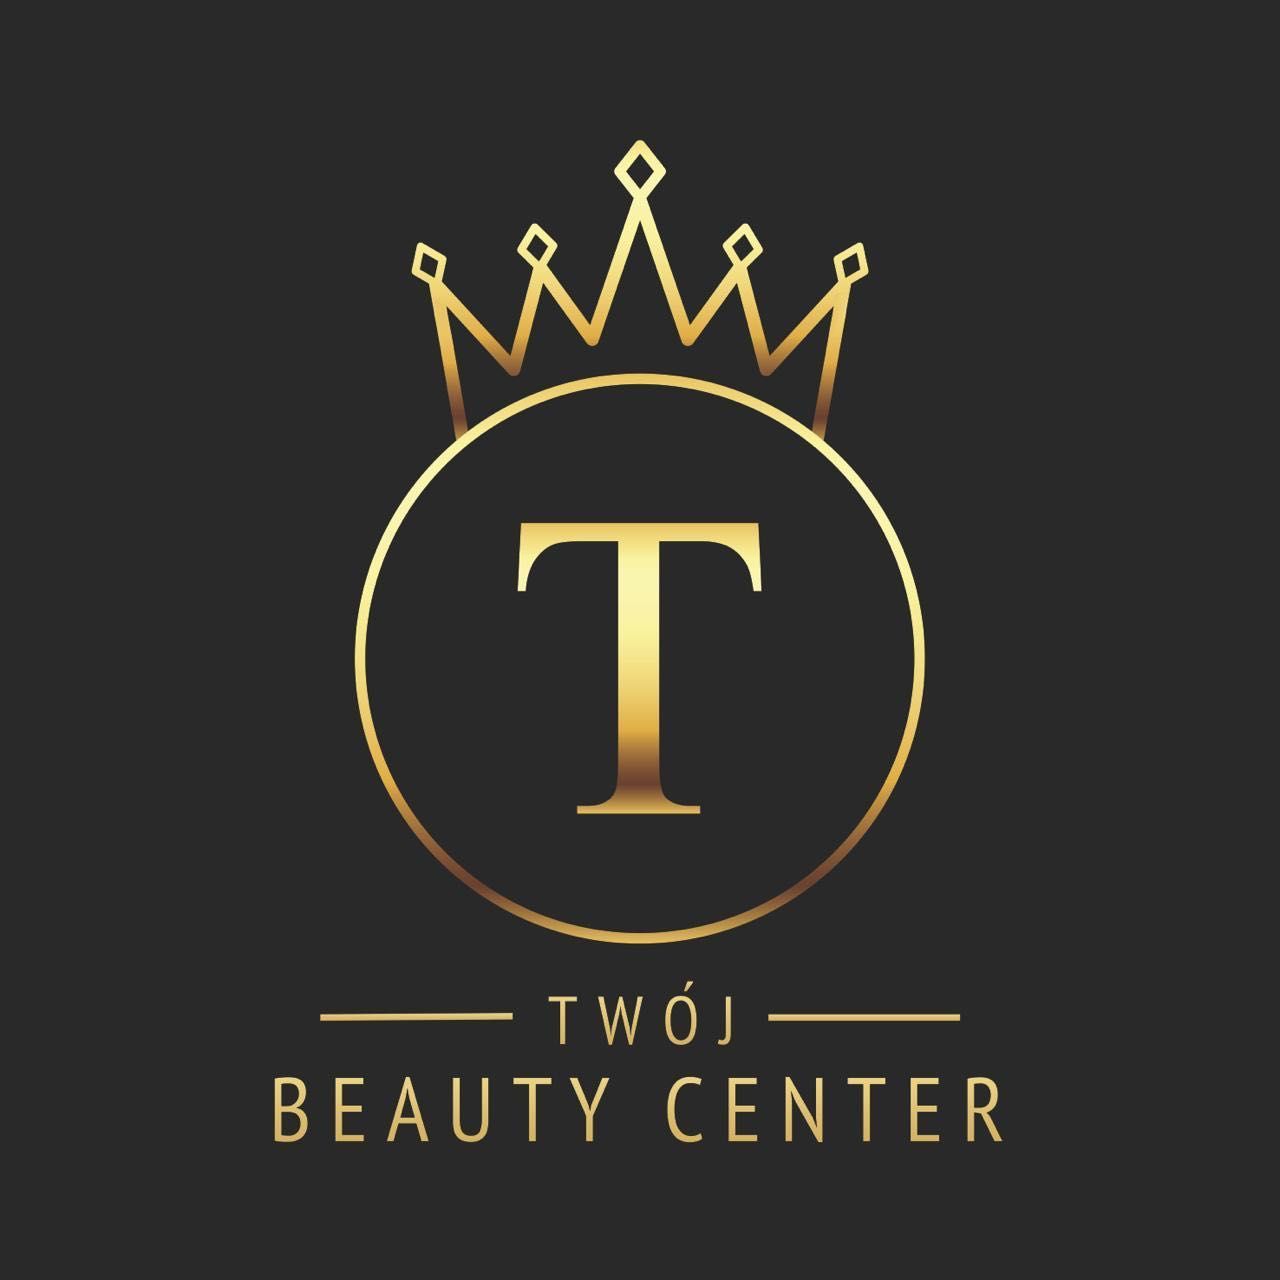 Twój Beauty Center, Kiełbaśnicza 7A, 1UE, 50-108, Wrocław